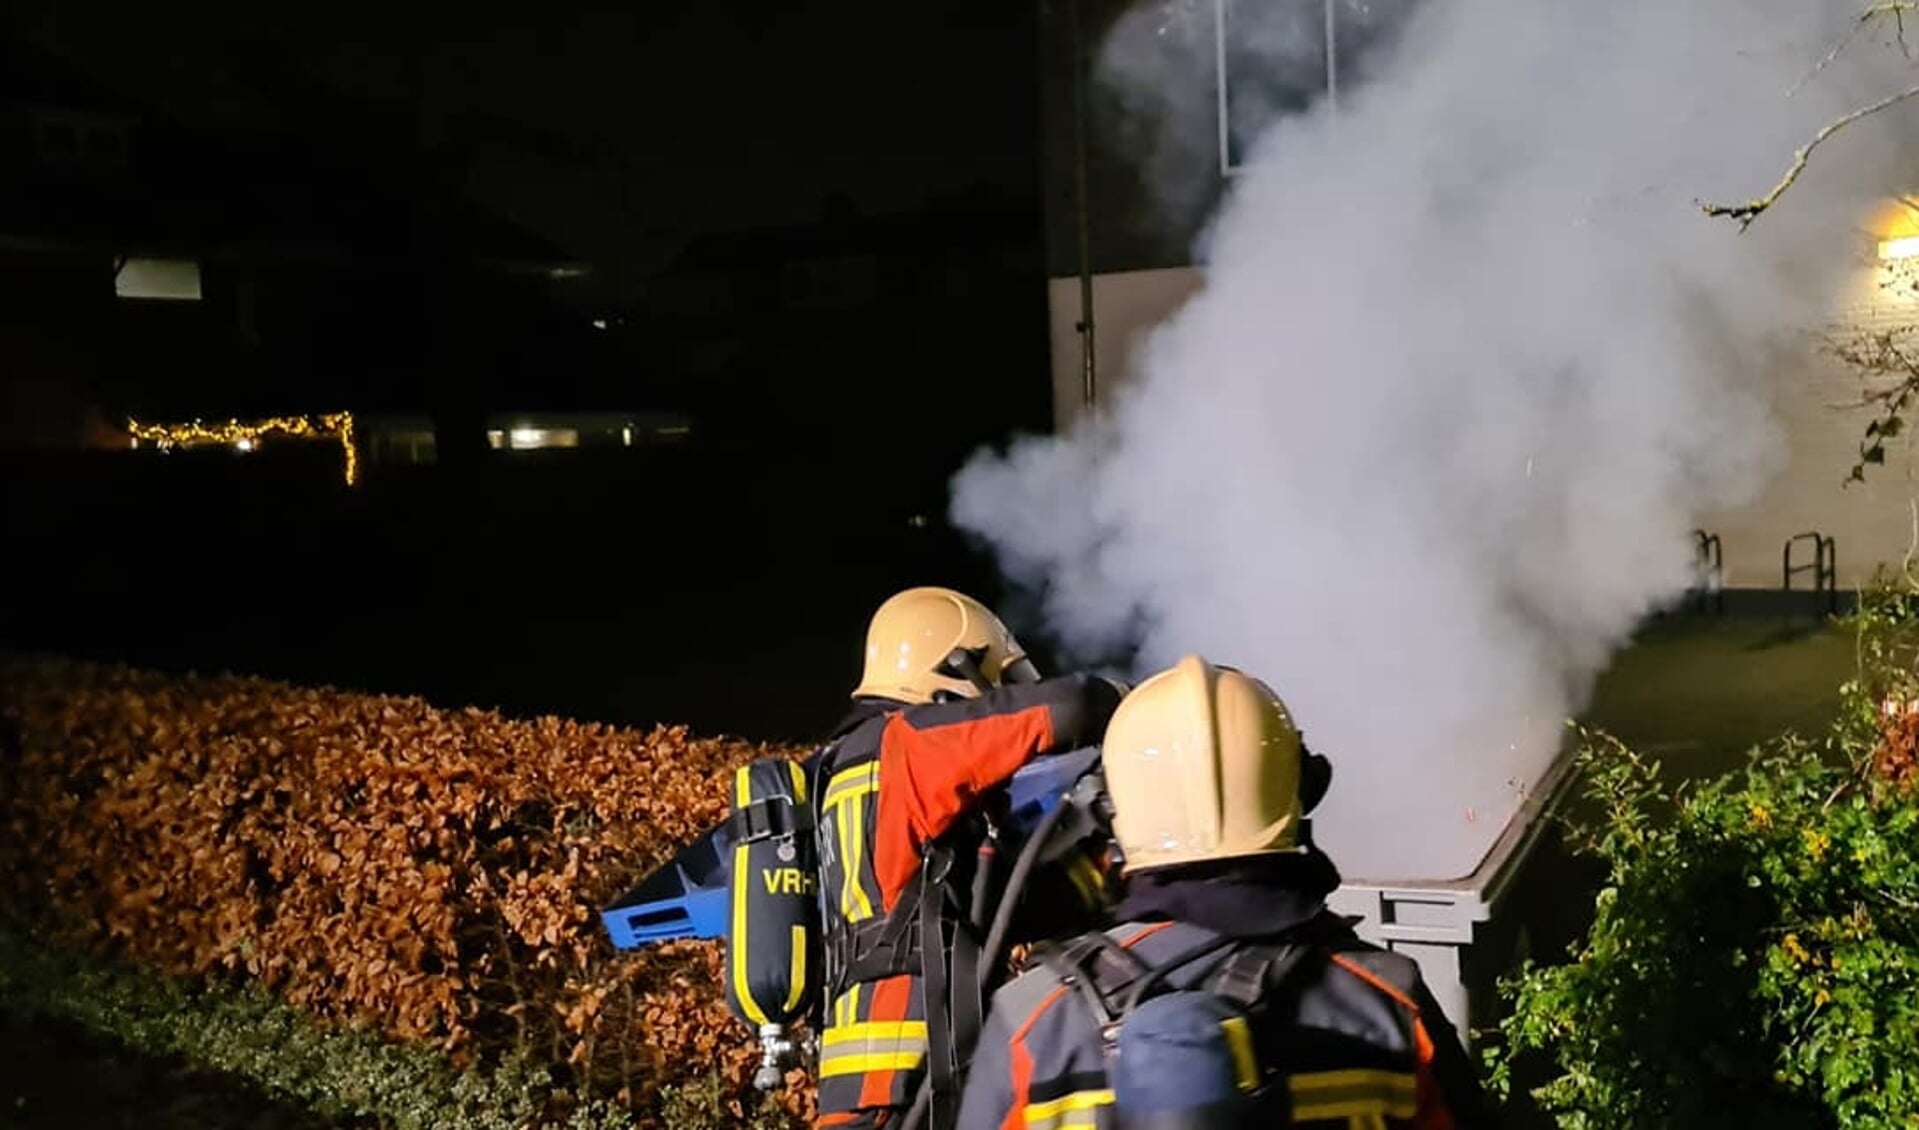 De brandweer moest tijdens de jaarwisseling zeven keer uitrukken voor kleine brandjes. Foto: facebook brandweer Voorschoten